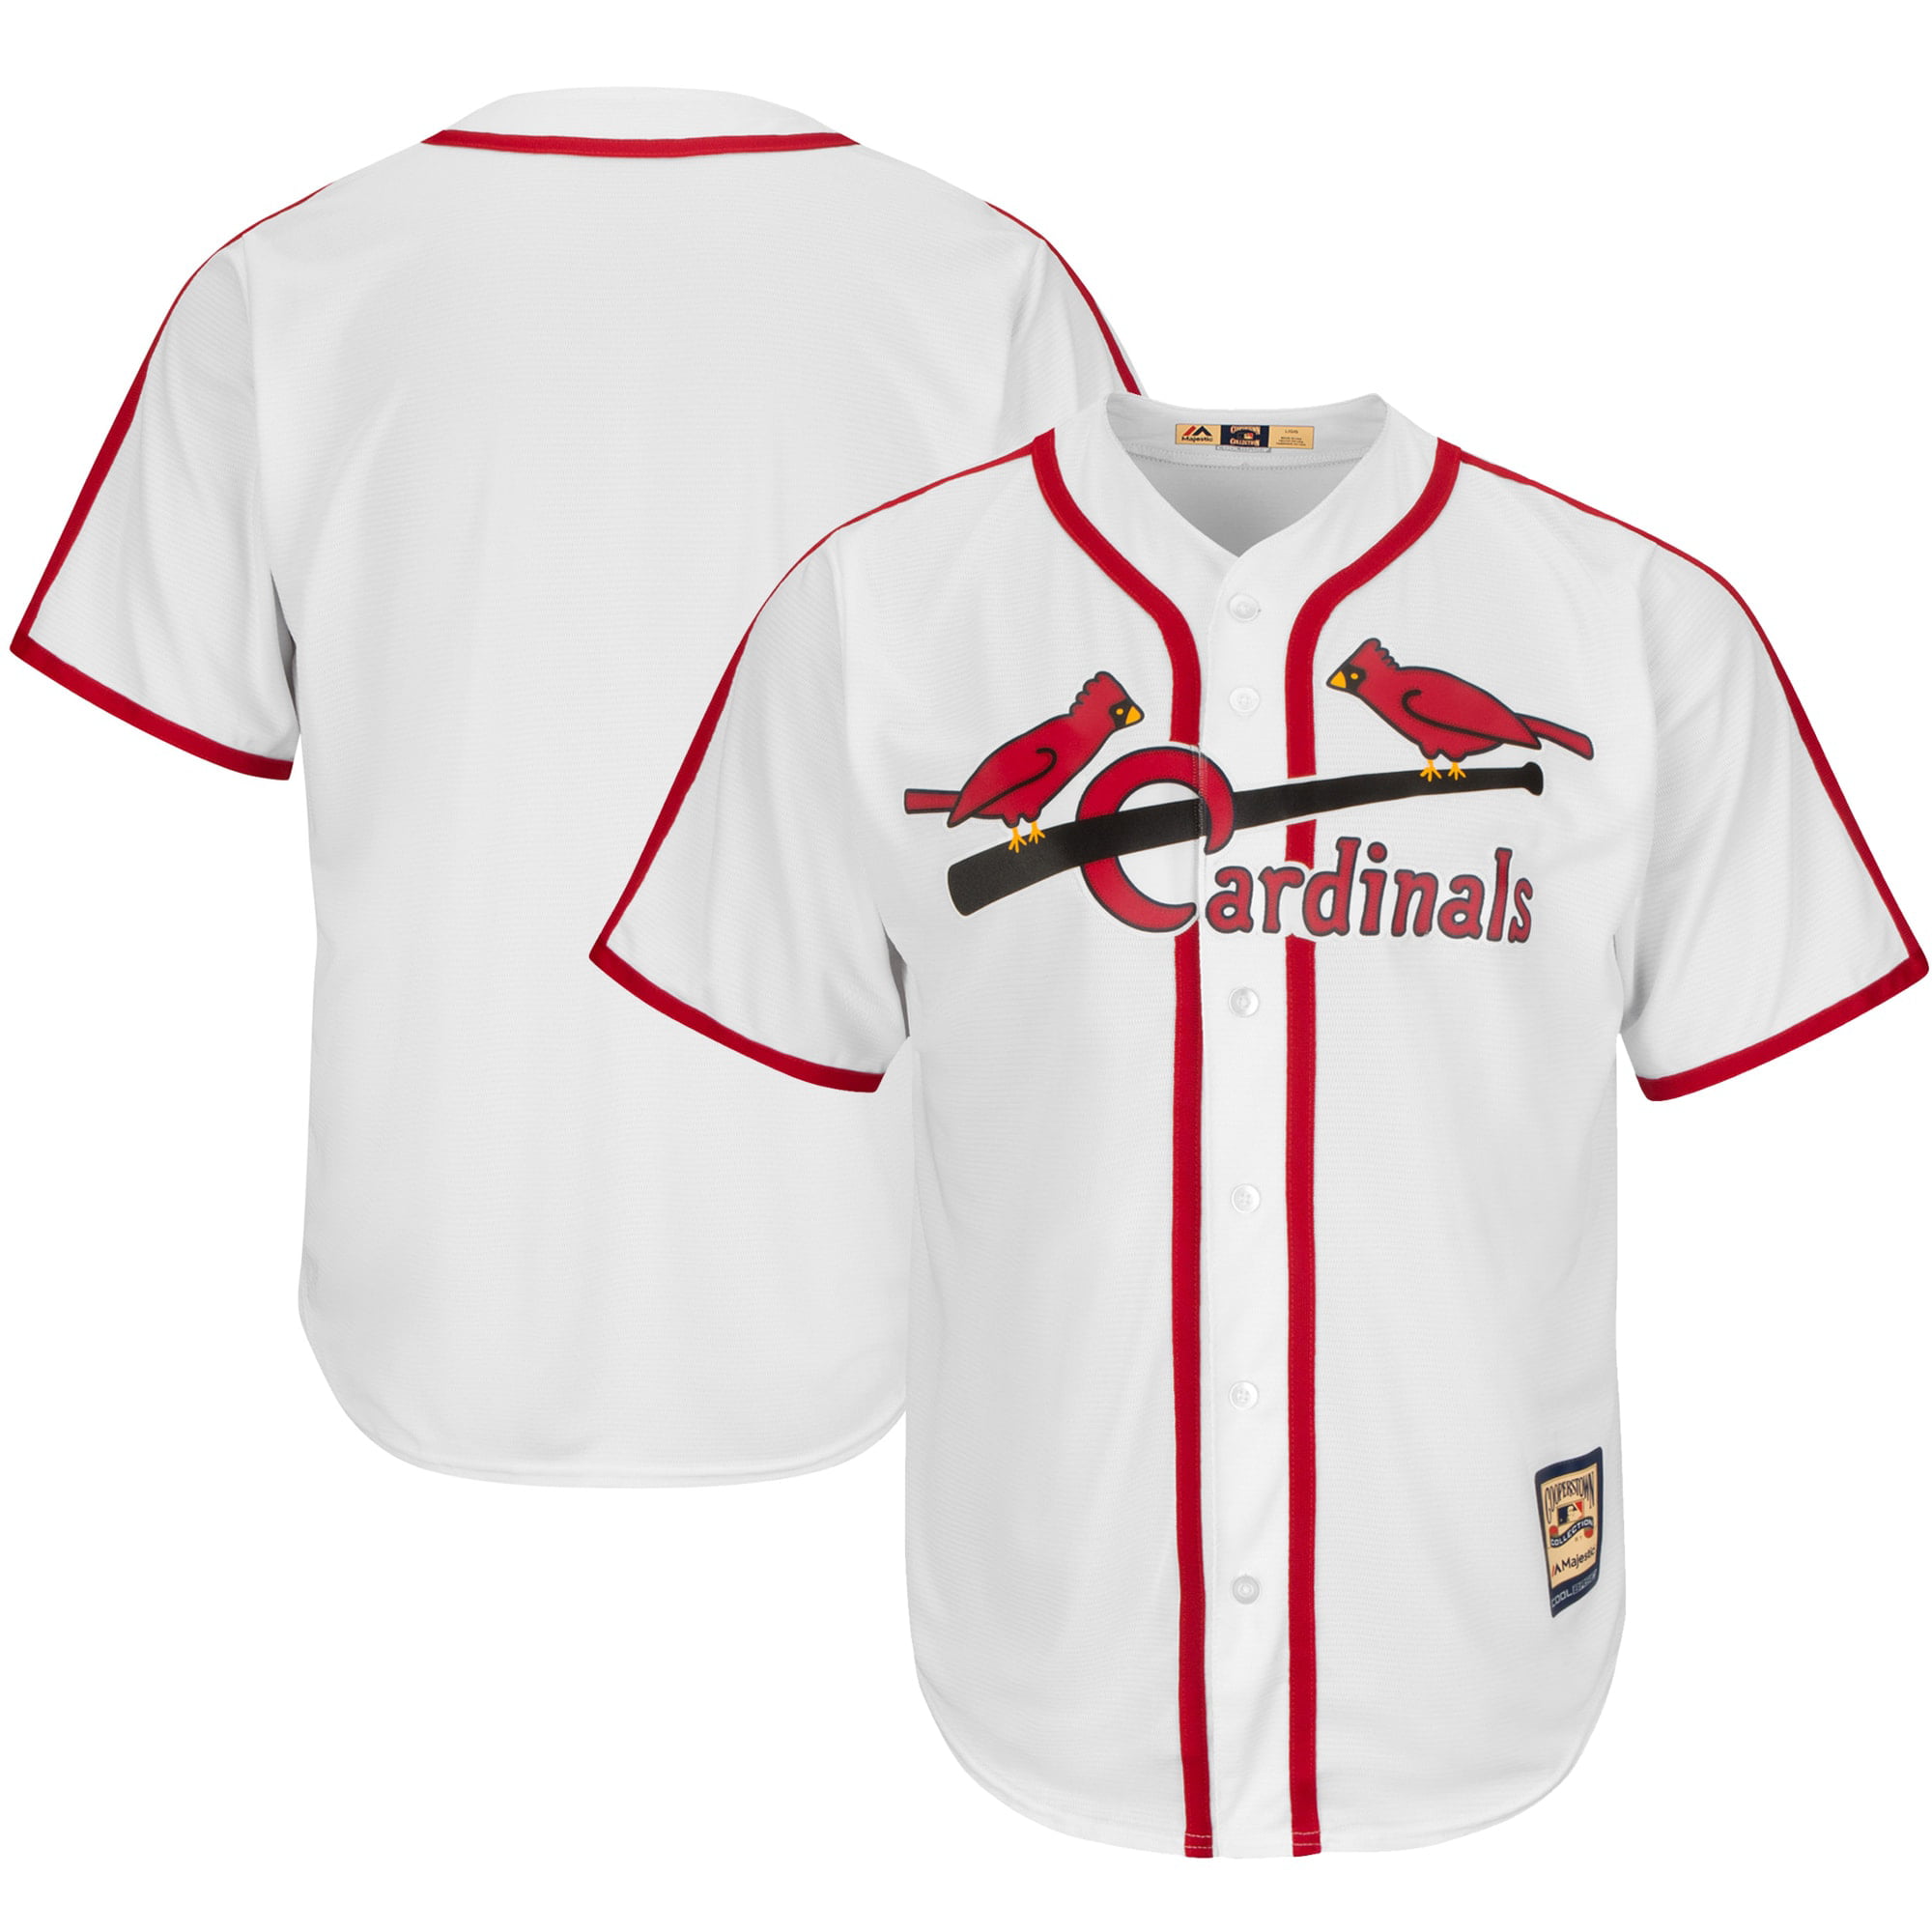 cardinals jersey walmart